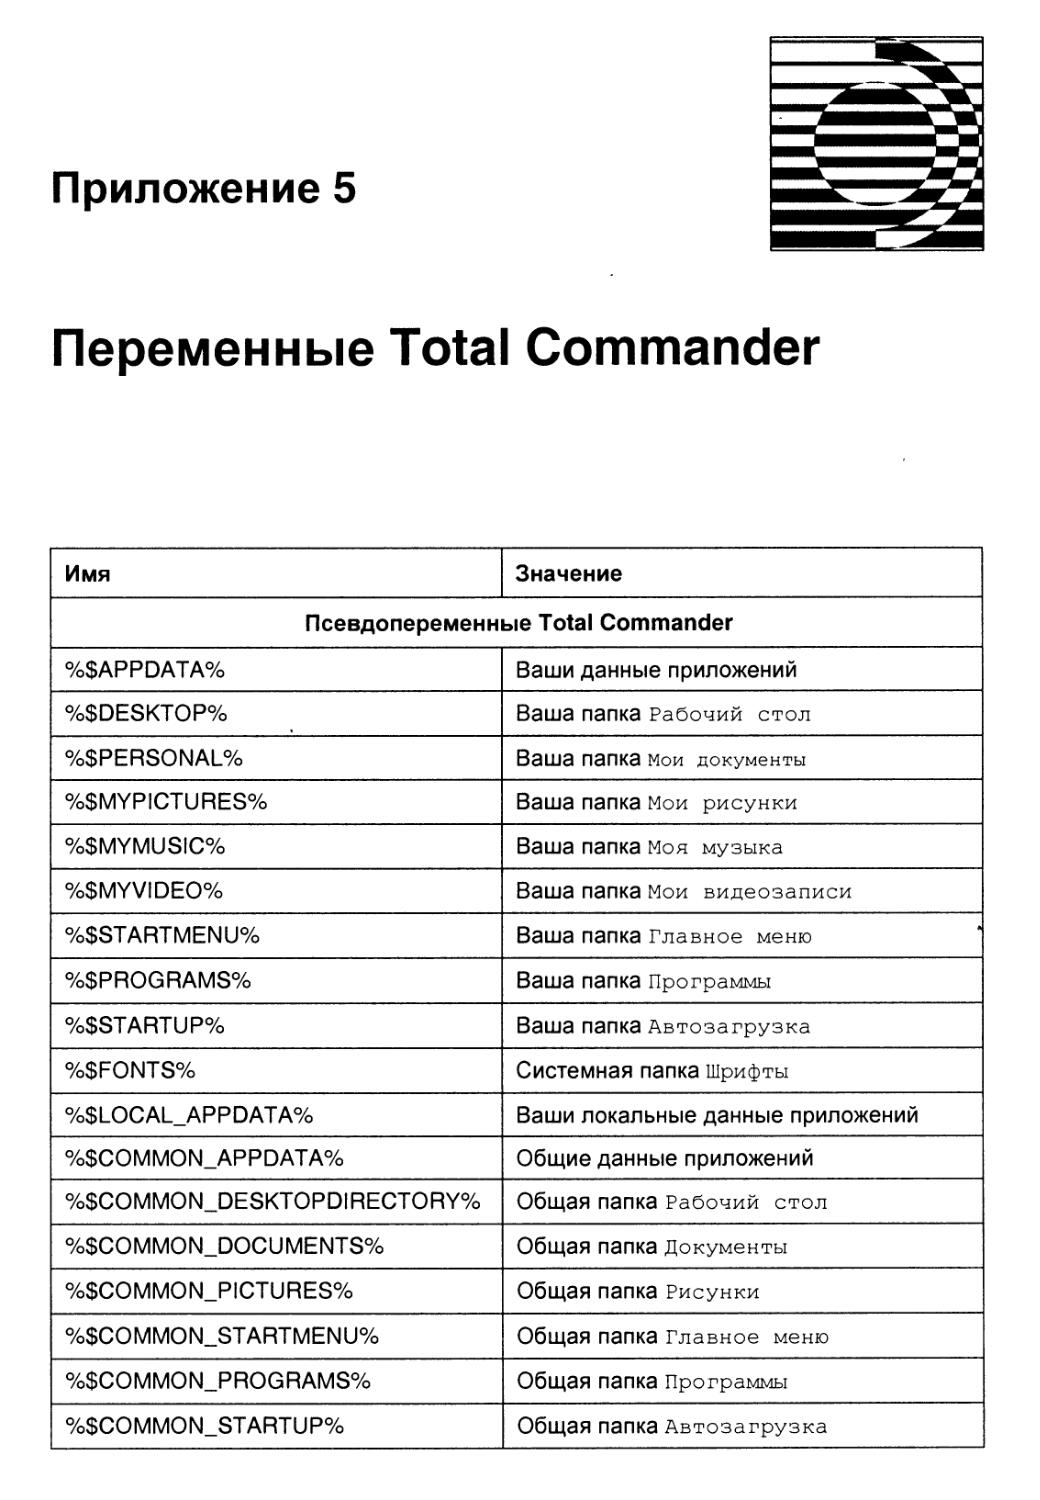 Приложение 5. Переменные Total Commander